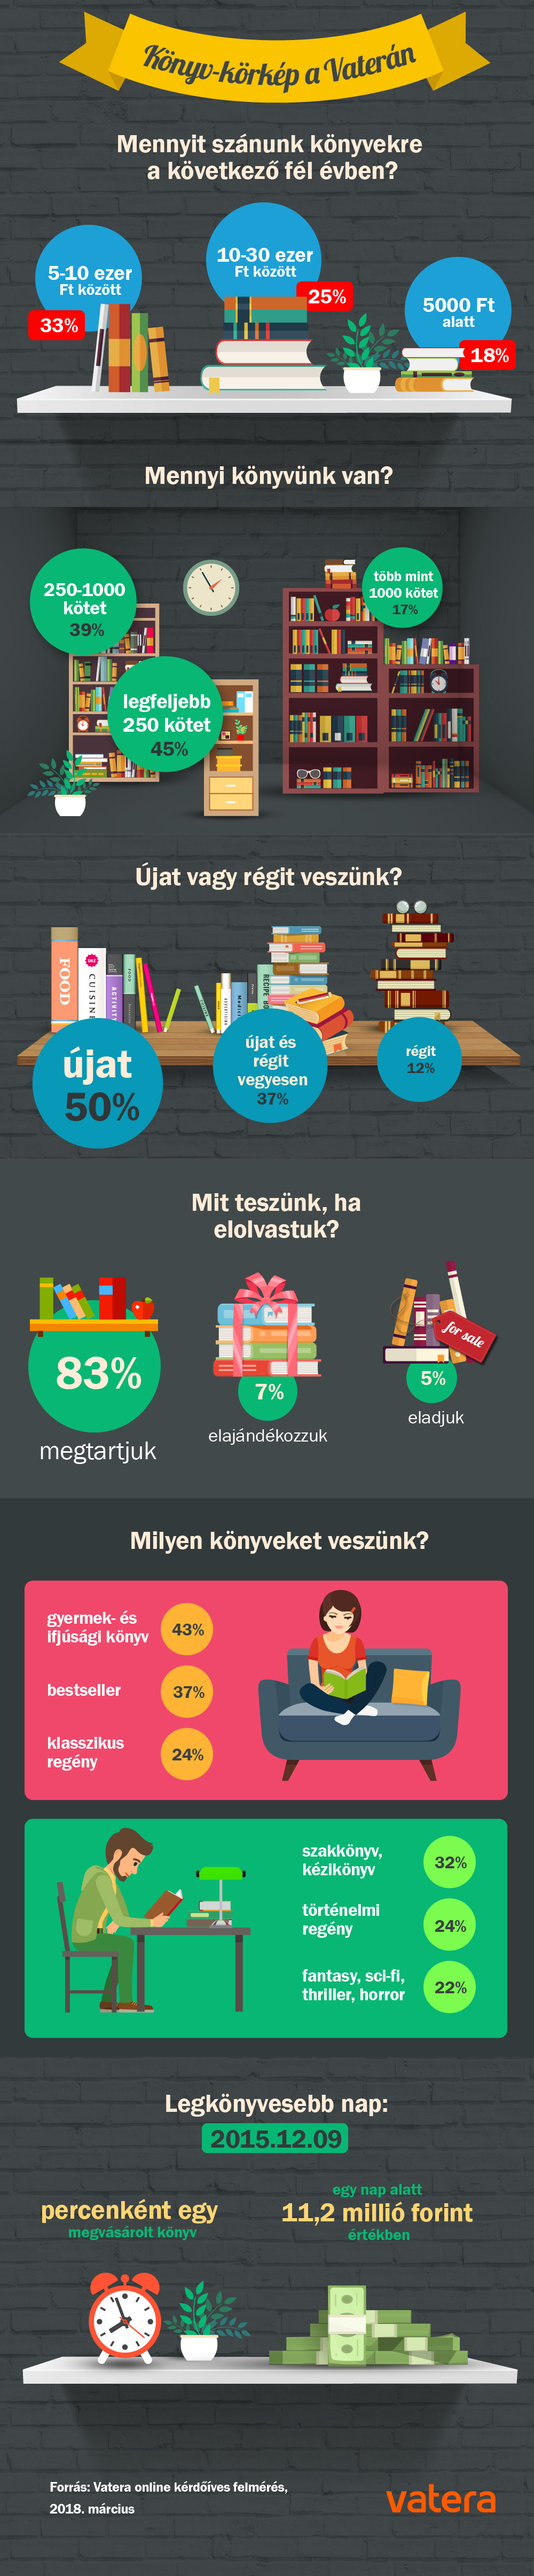 Vatera_Konyv_korkep_infografika_2018